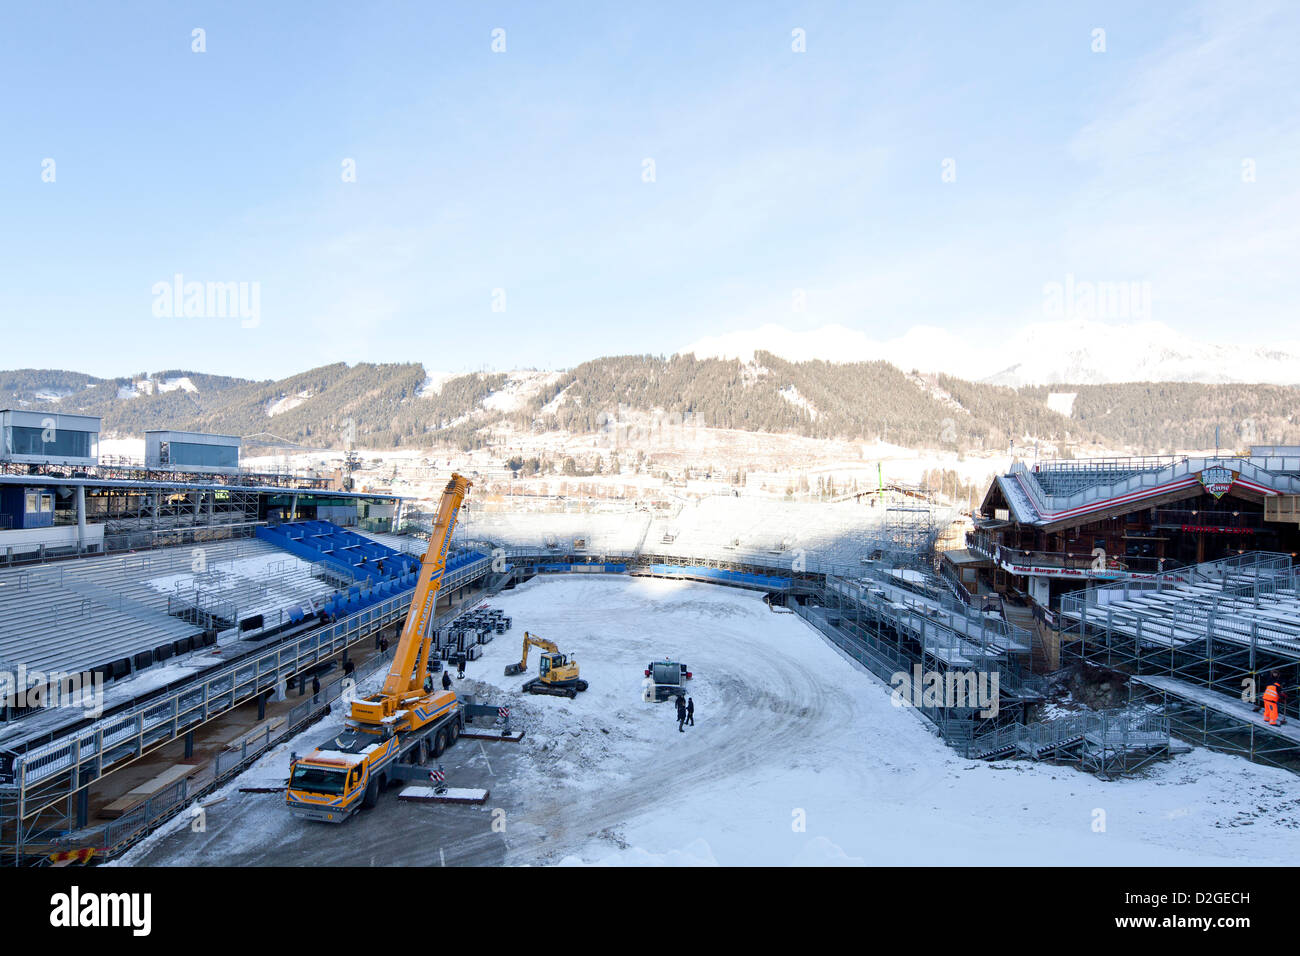 Vorbereitende Maßnahmen im Zielbereich für den FIS Alpinen Ski Weltmeisterschaften 2013 in Schladming, Steiermark, Österreich, Mittwoch, 23. Januar 2013. Stockfoto